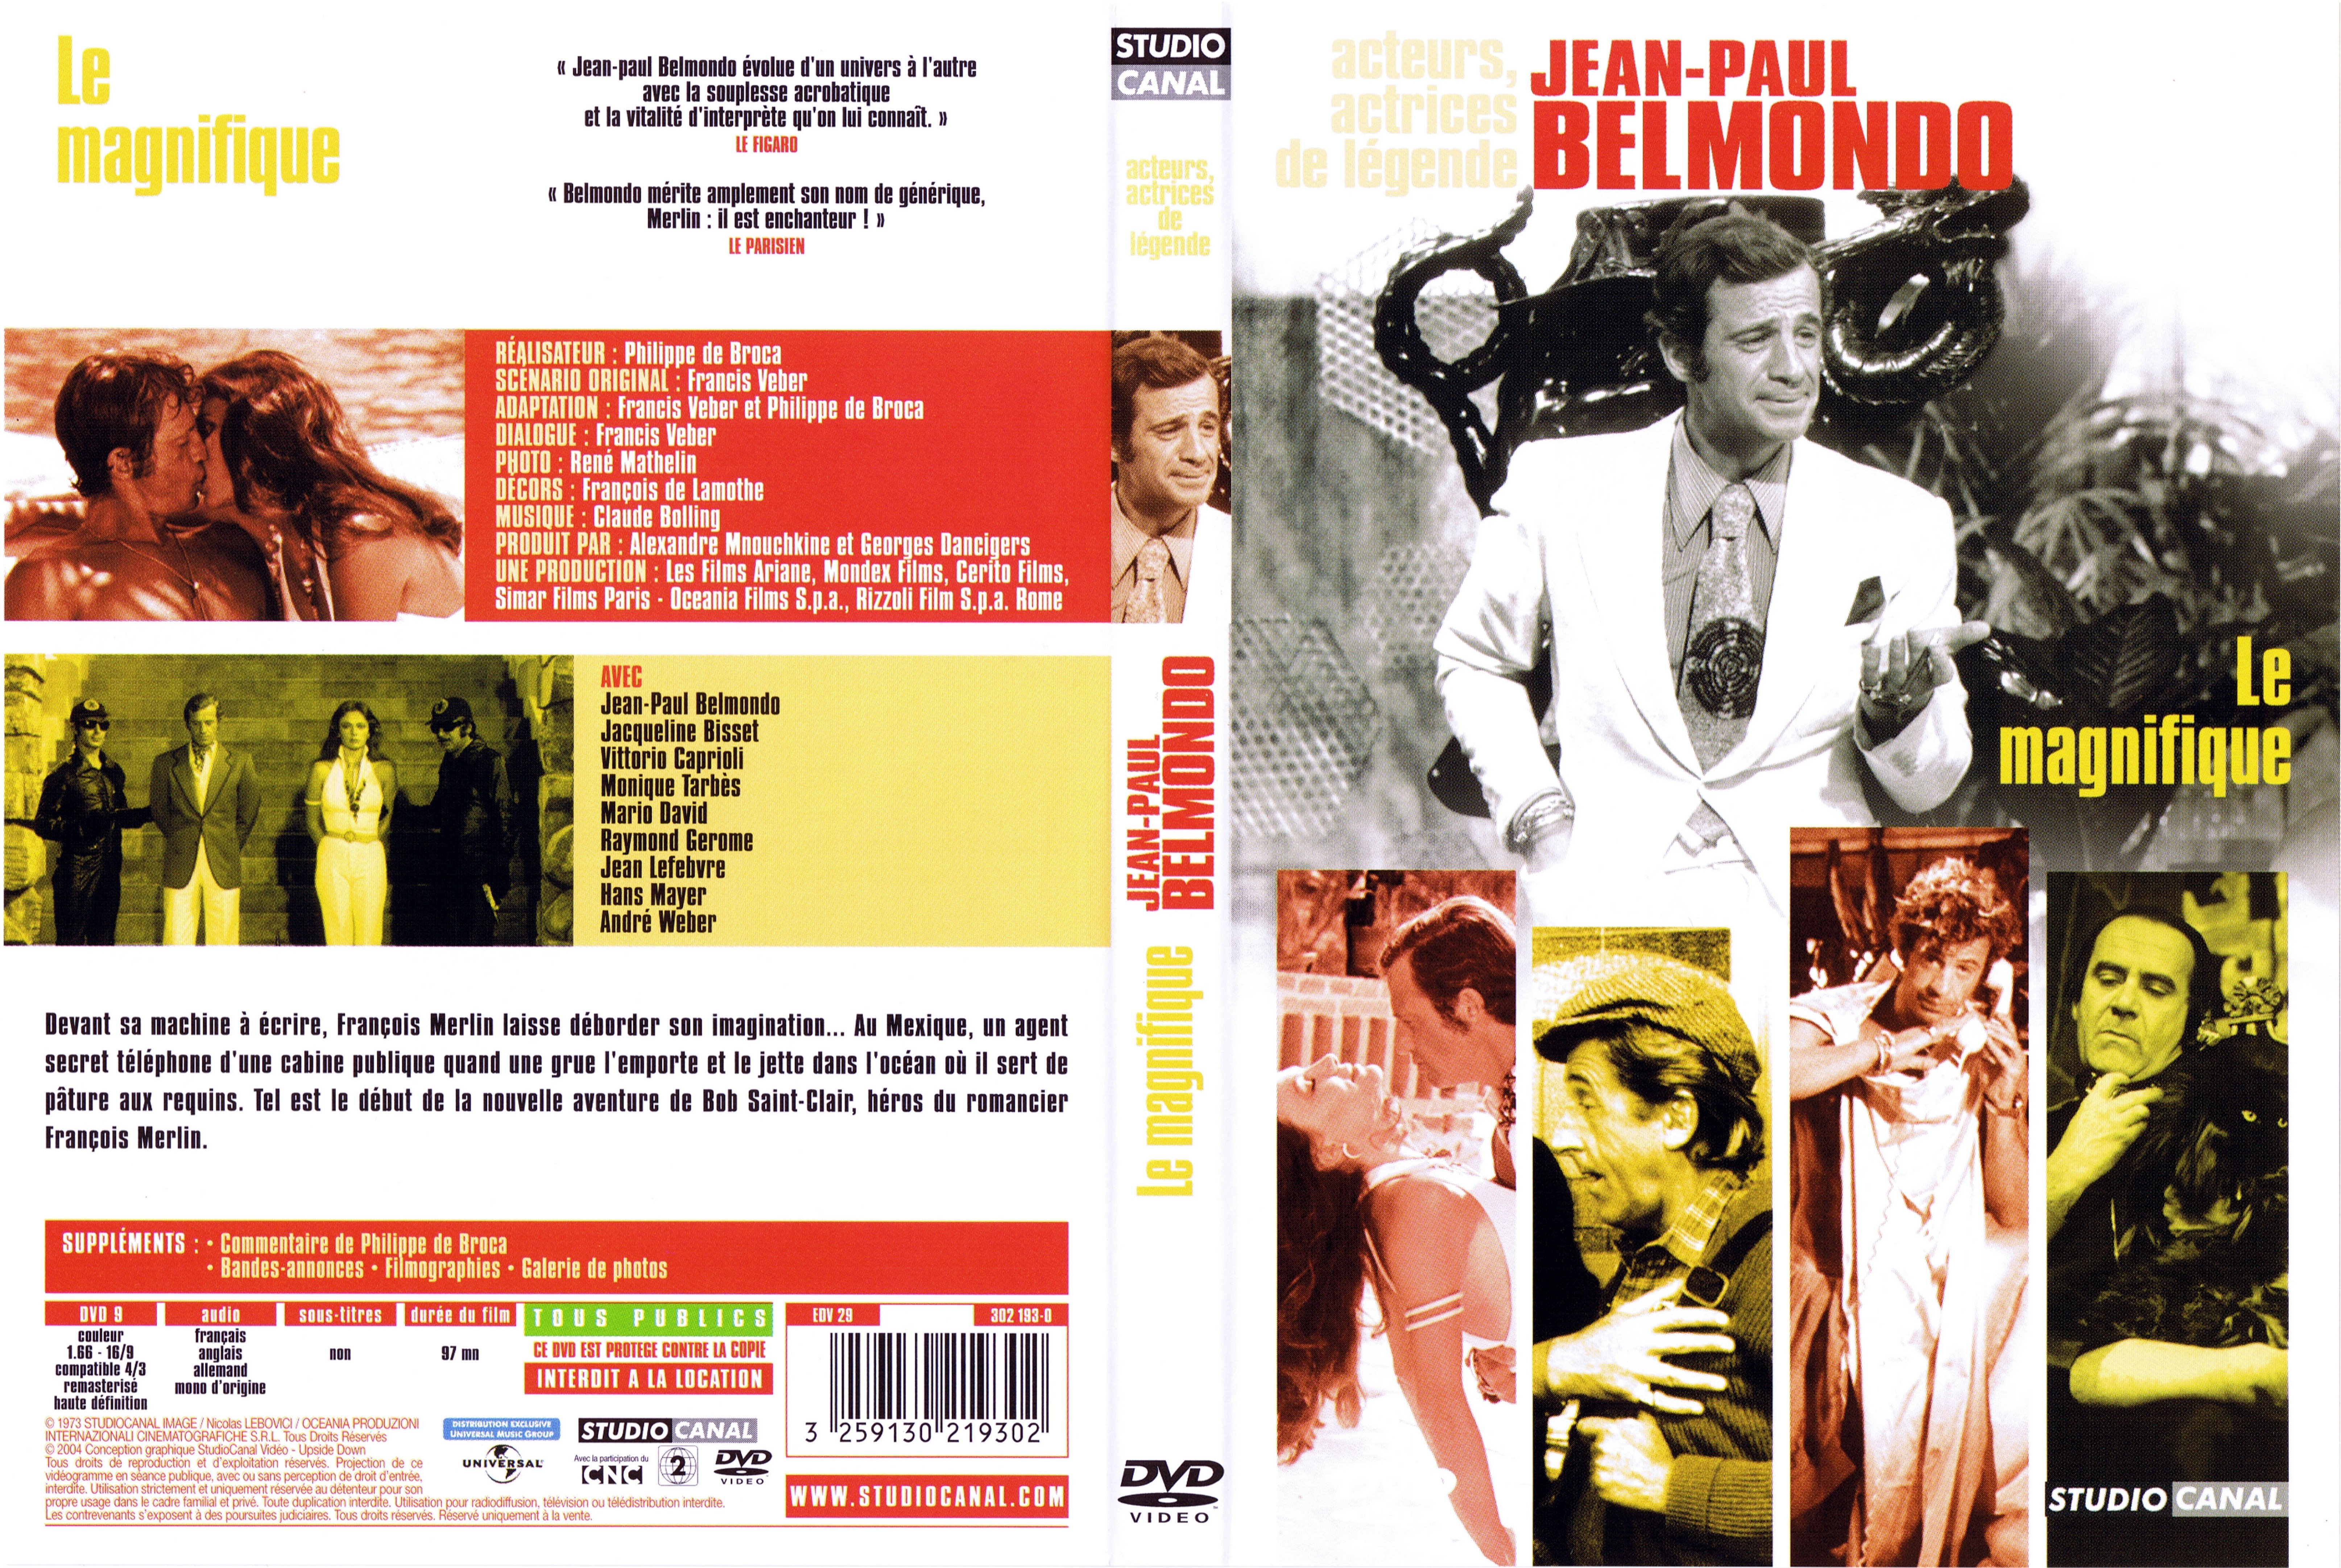 Jaquette DVD Le magnifique (Belmondo) v2